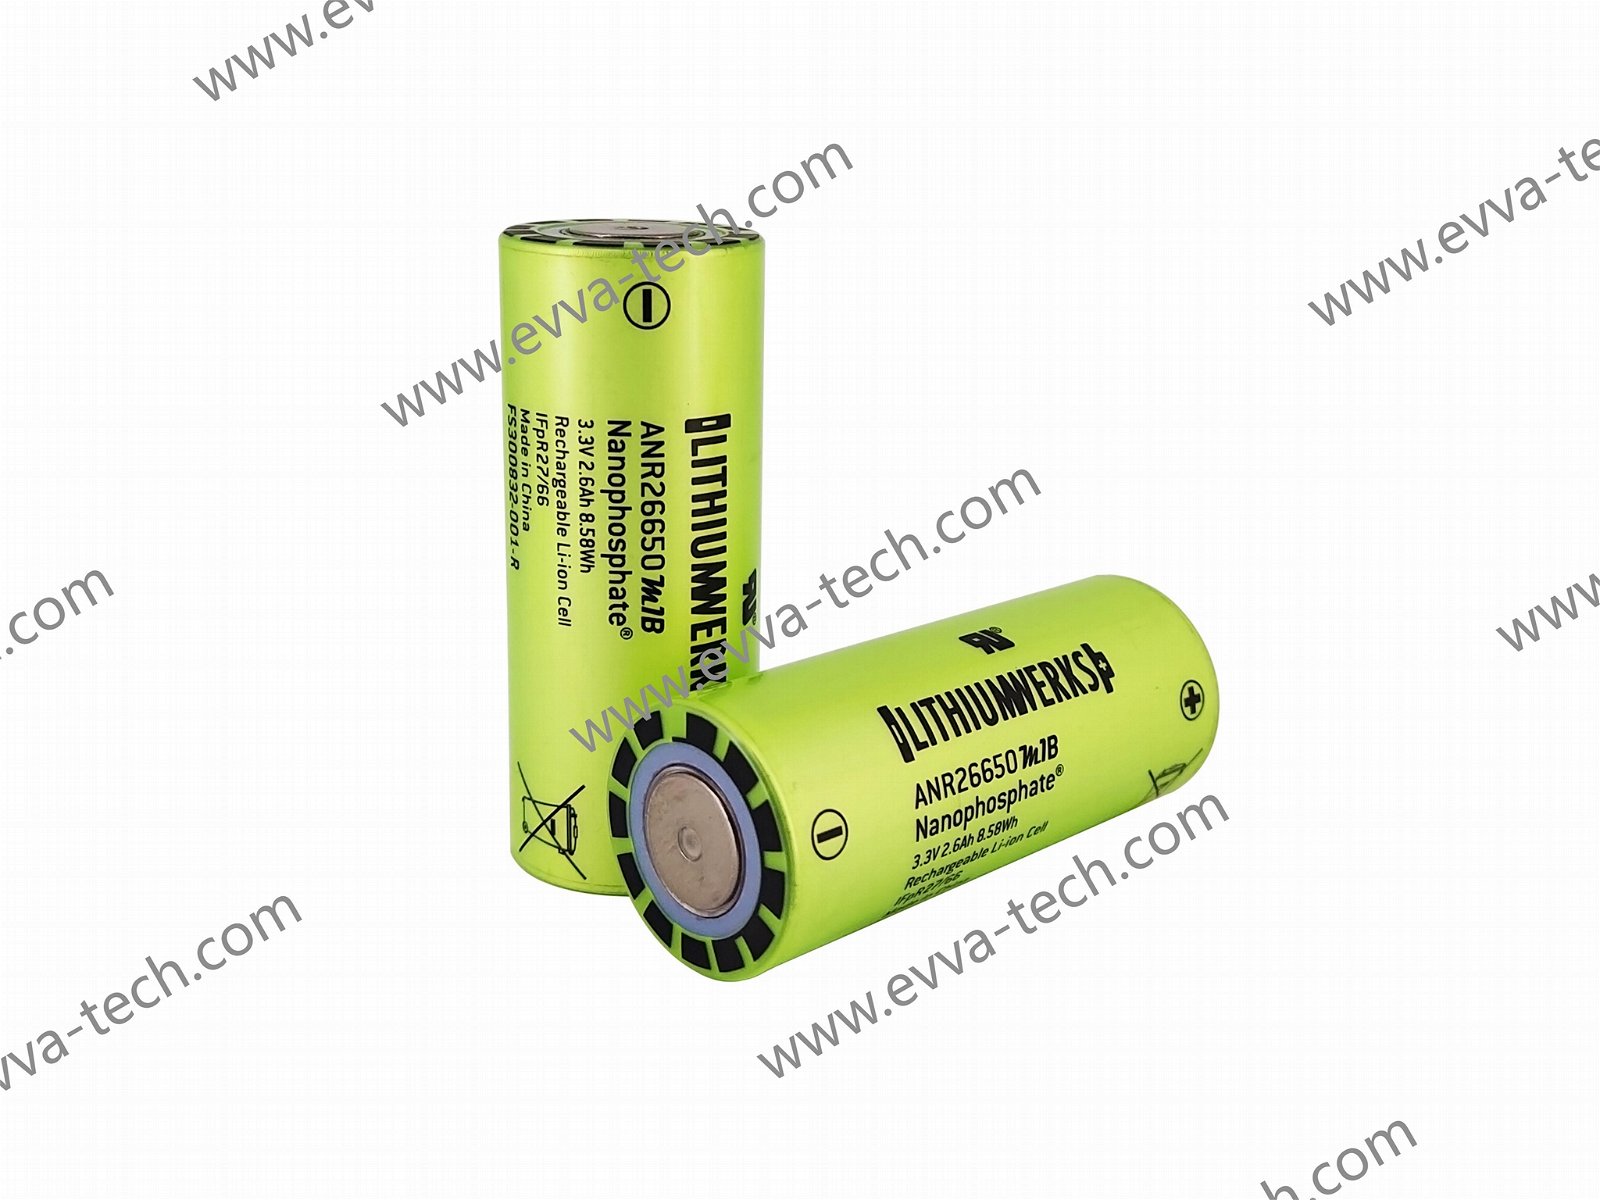 52A Lithium Werks (A123) LIFEPO4 26650 Battery Cell ANR26650M1B 3.3V 2600mAh